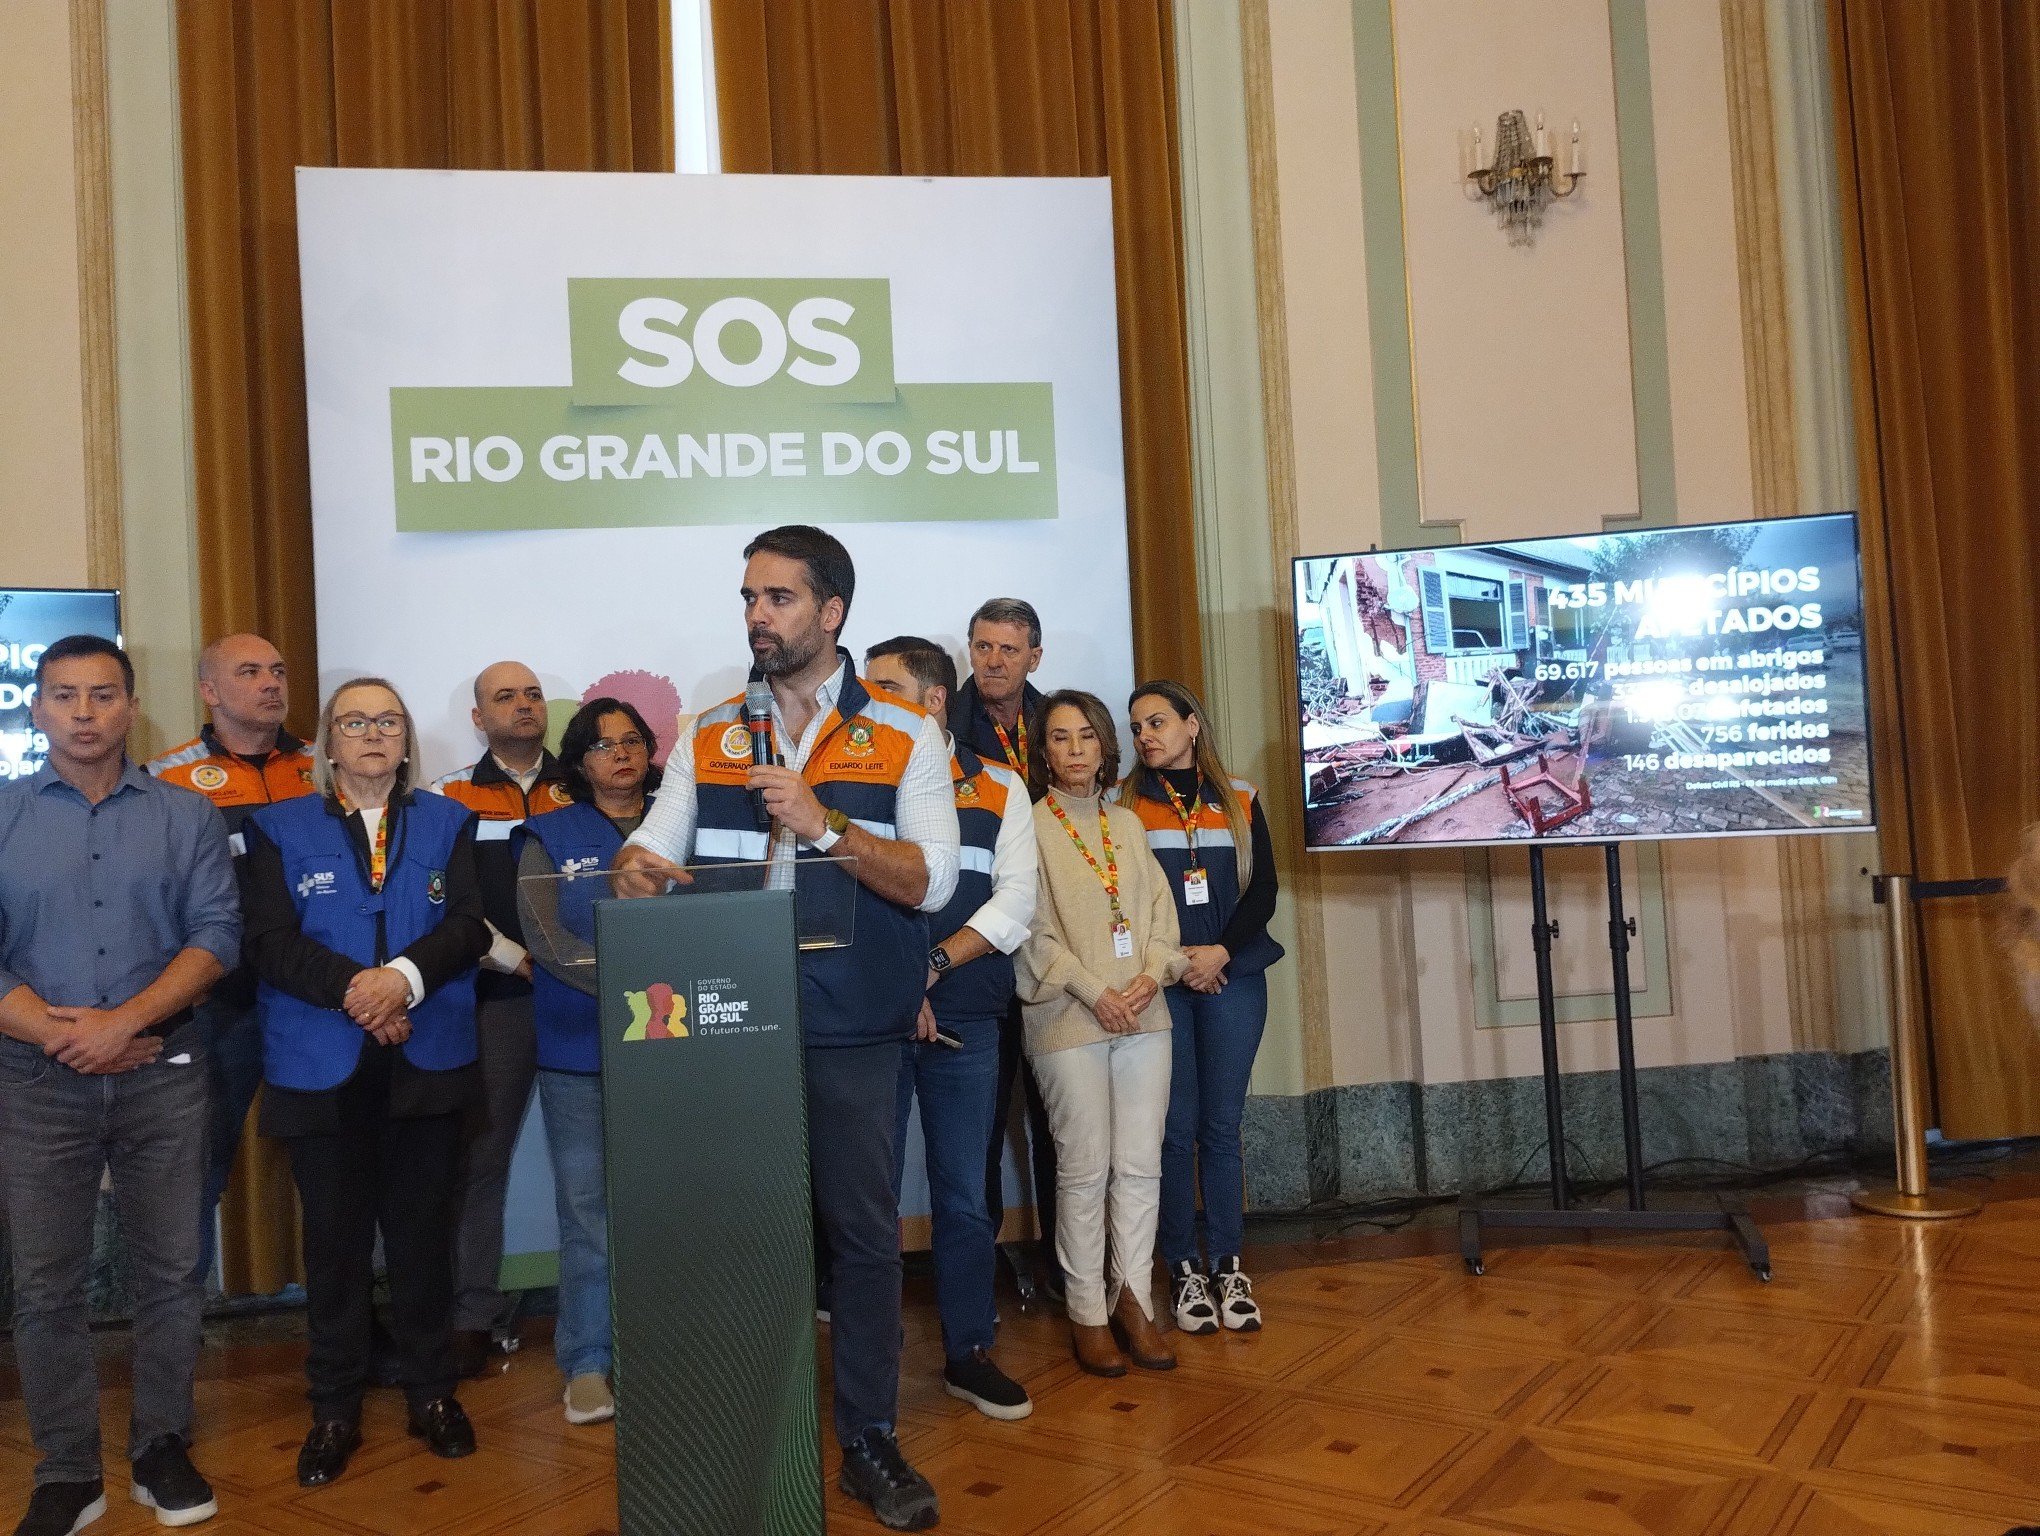 CATÁSTROFE NO RS: Governador Eduardo Leite fala sobre a enchente no RS; veja